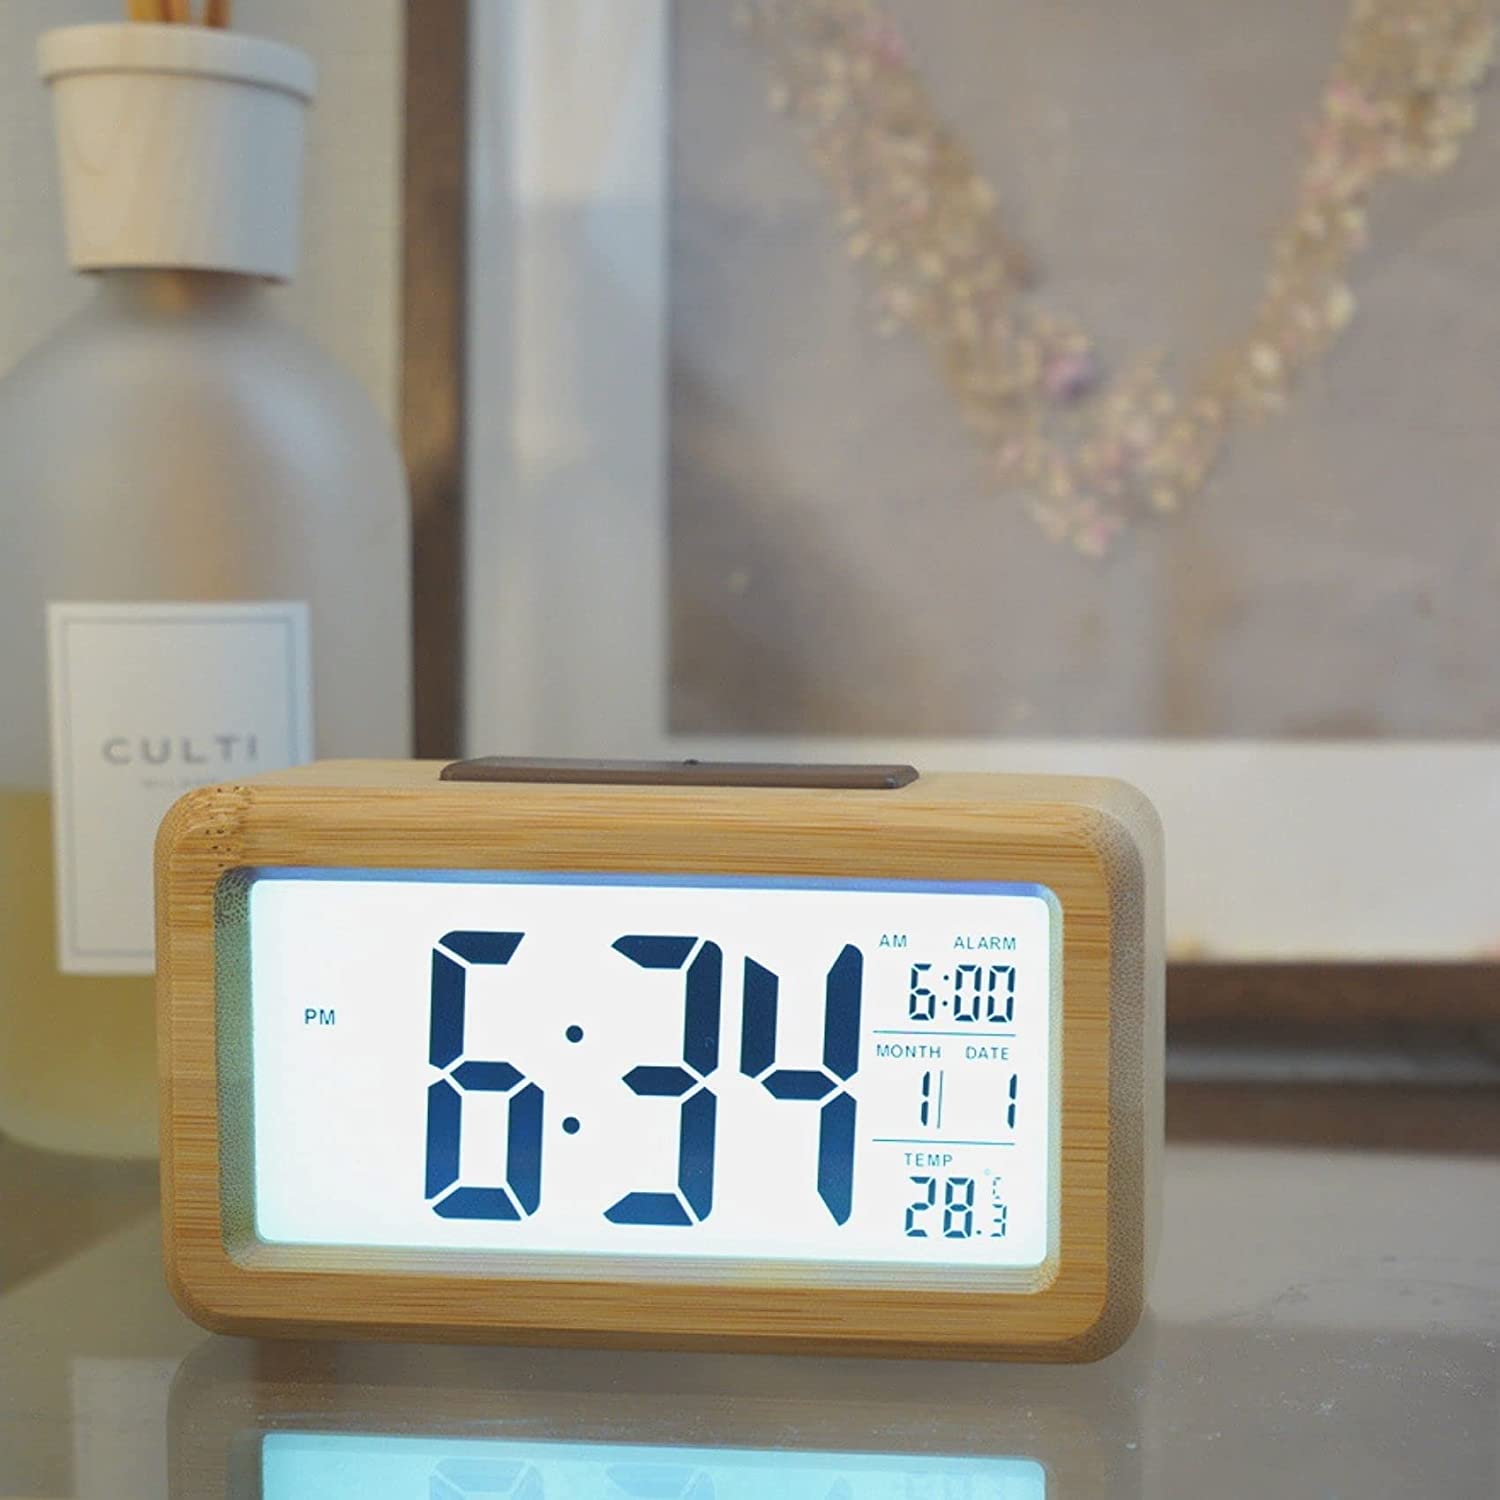 デジタル アラーム時計 インテリア 置き時計 小さい 天然竹 目覚まし時計 かわいい スヌーズ機能 光センサー 液晶バックライト付き 温度計 電池式 ベッドルーム リビング 持ち運び便利